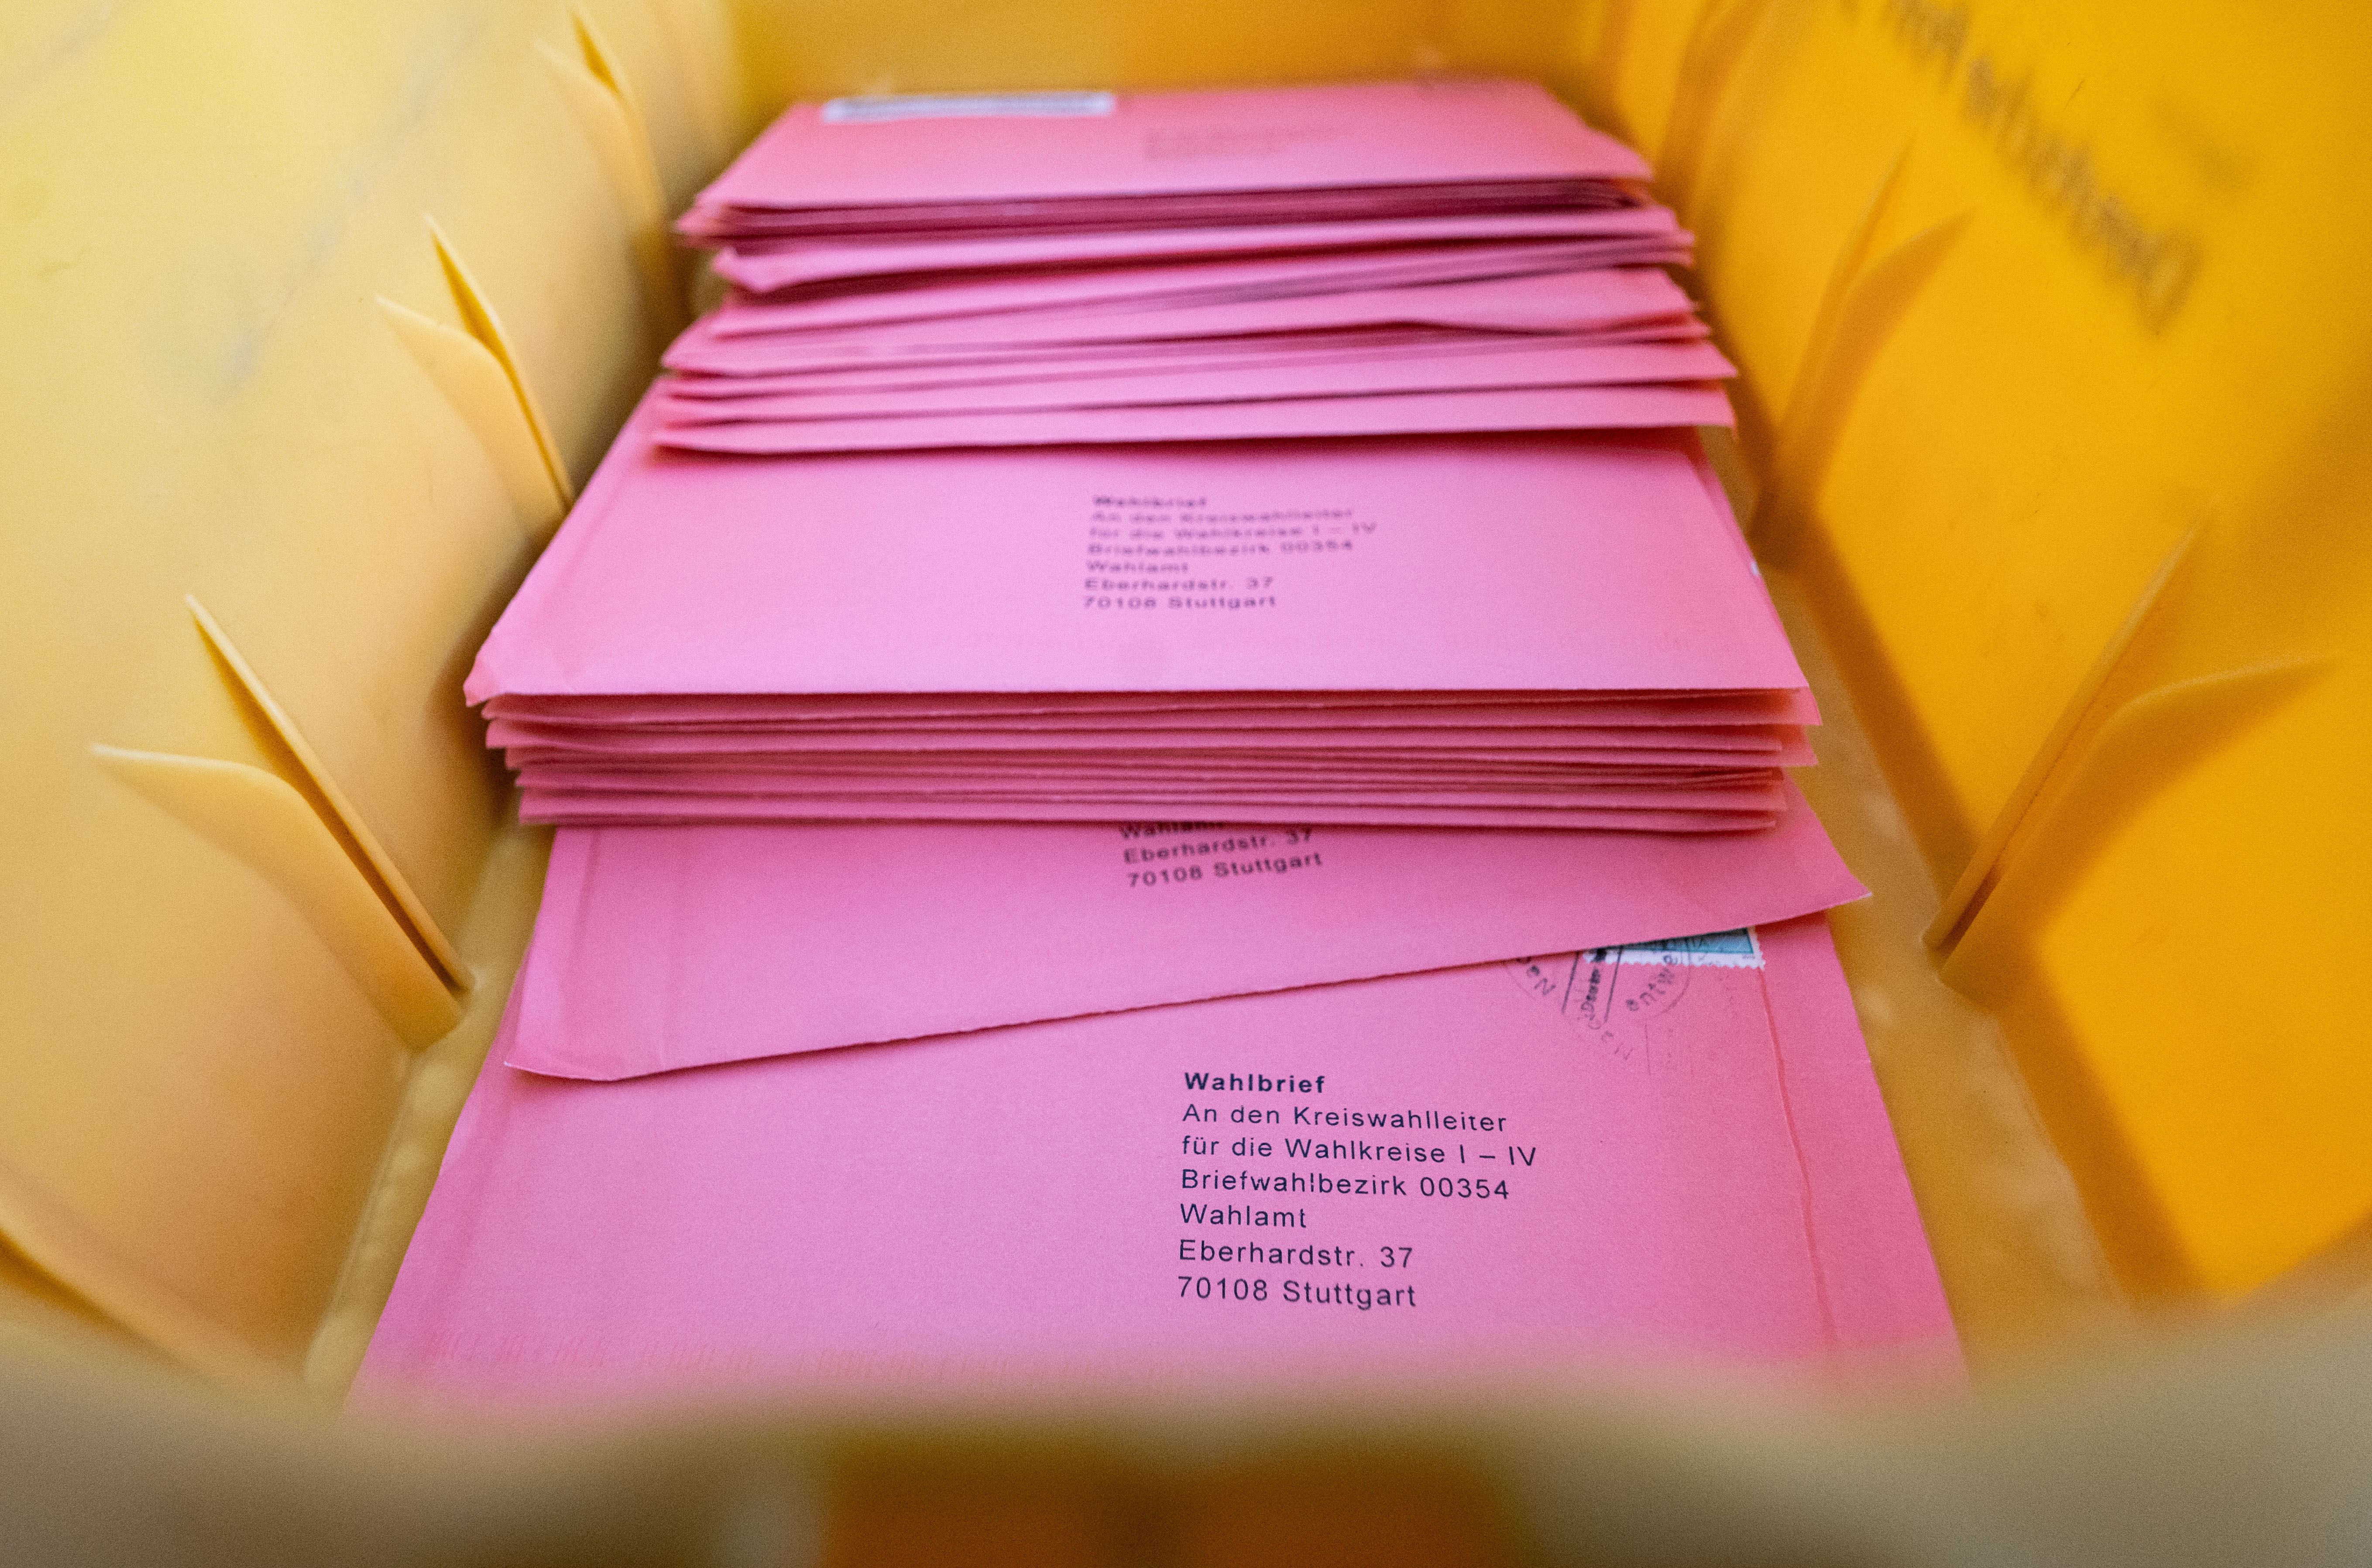 Wahlbriefe zur Landtagswahl in Baden-Württemberg